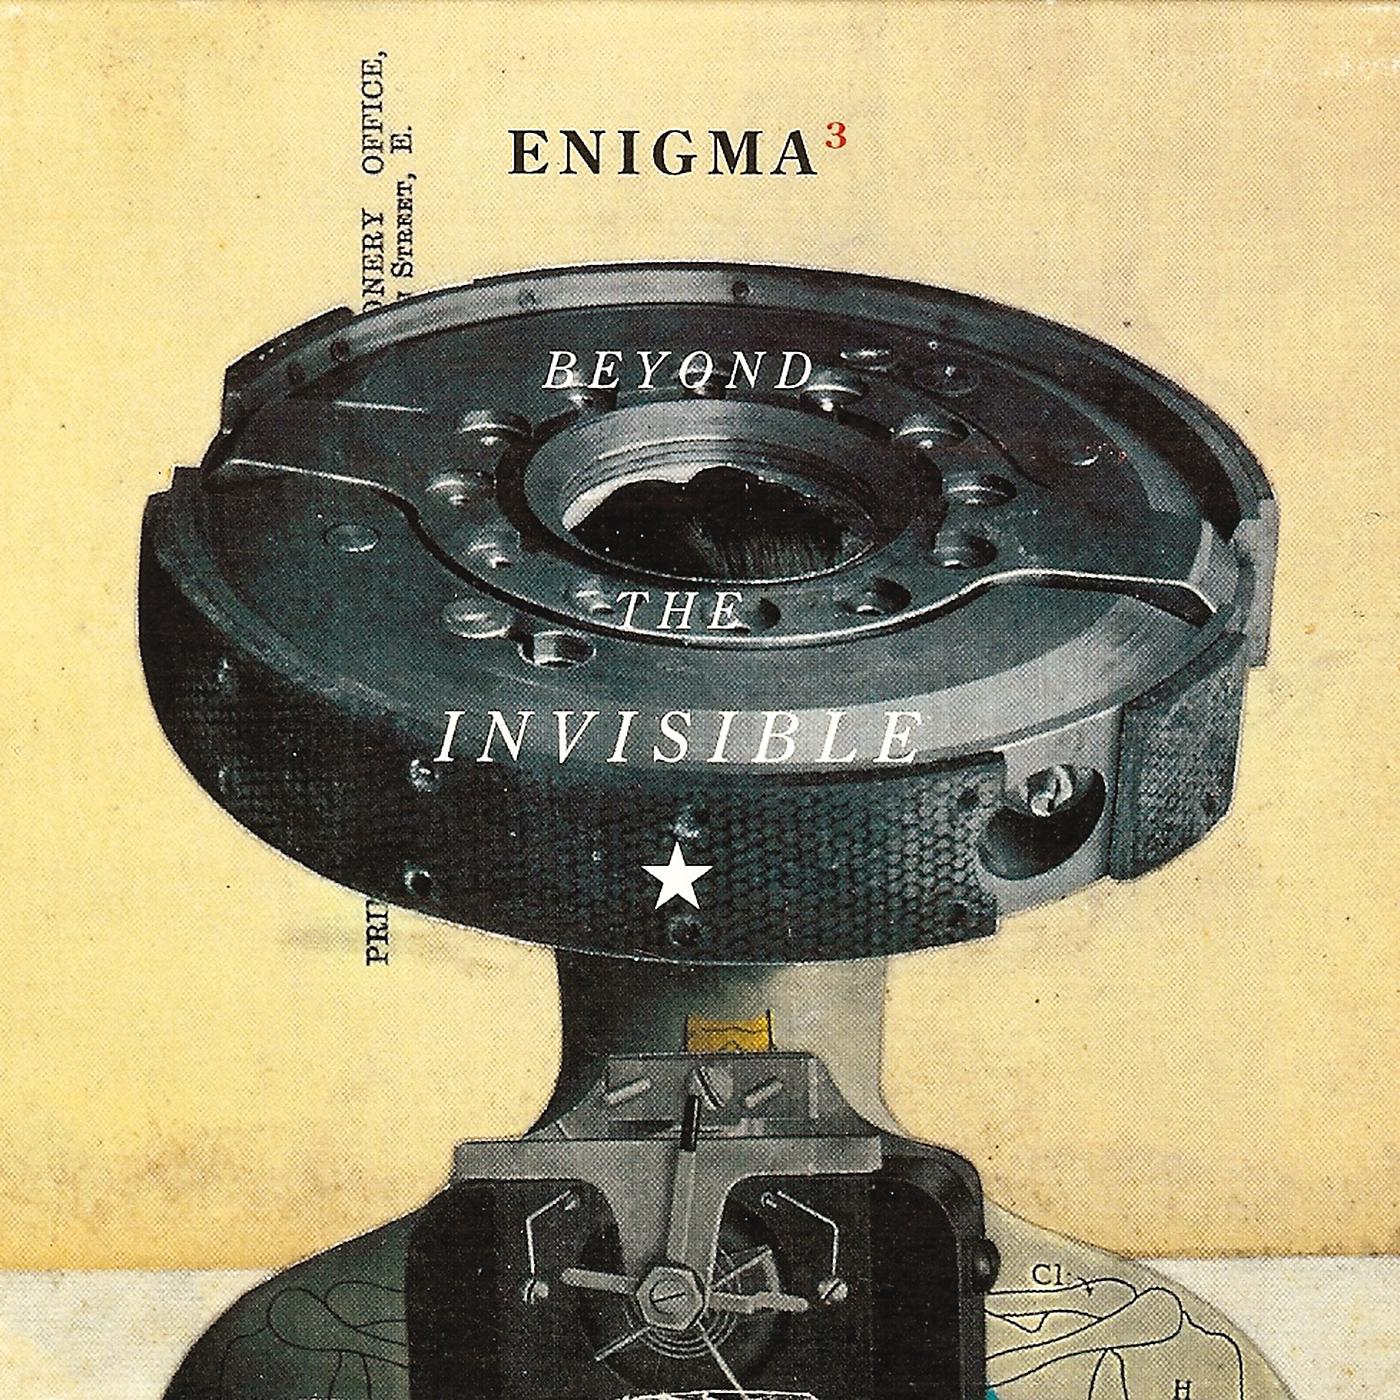 Le roi est. Enigma 1996. Enigma - Beyond the Invisible (1996). Enigma 1990. Enigma Beyond the Invisible альбом.